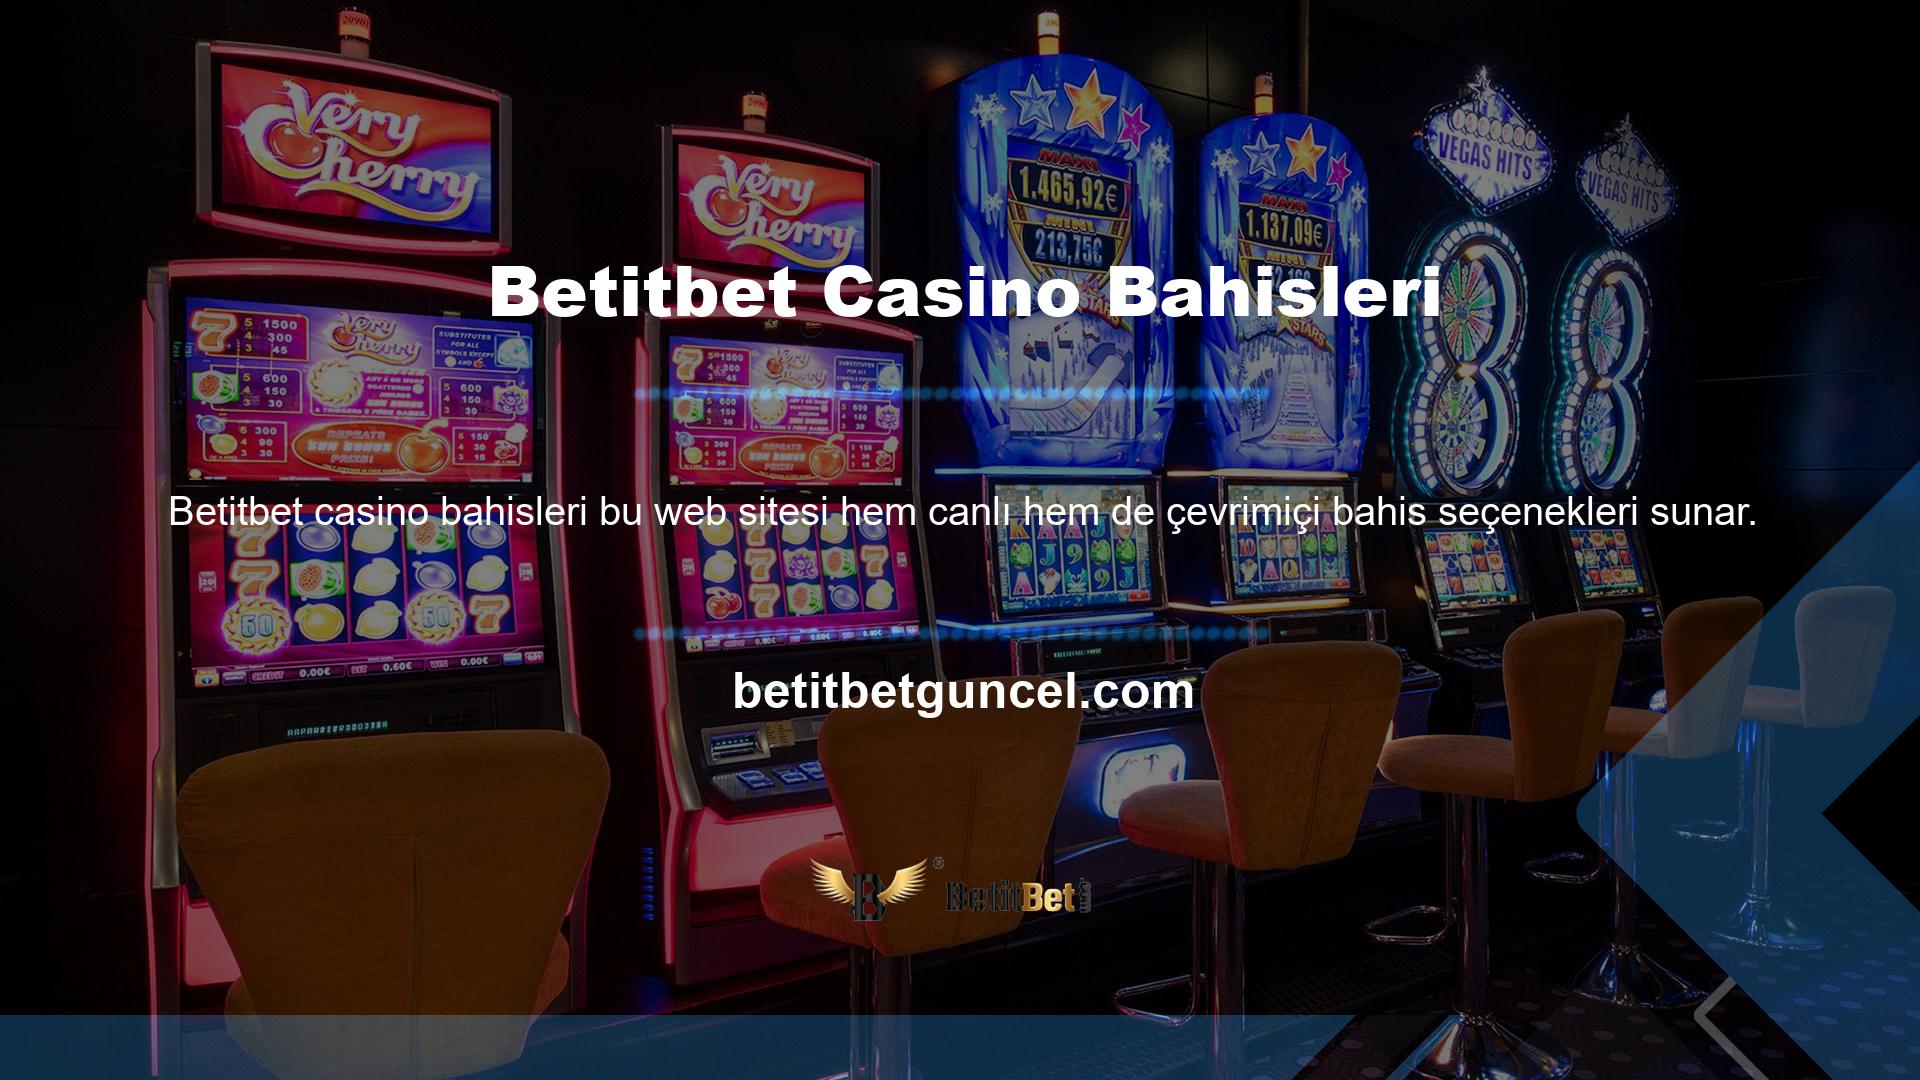 Betitbet Casinosunda çevrimiçi canlı bahis oyunları ve sanal bahis seçenekleri mevcuttur, bu da onu bahis için en iyi yer haline getirmektedir